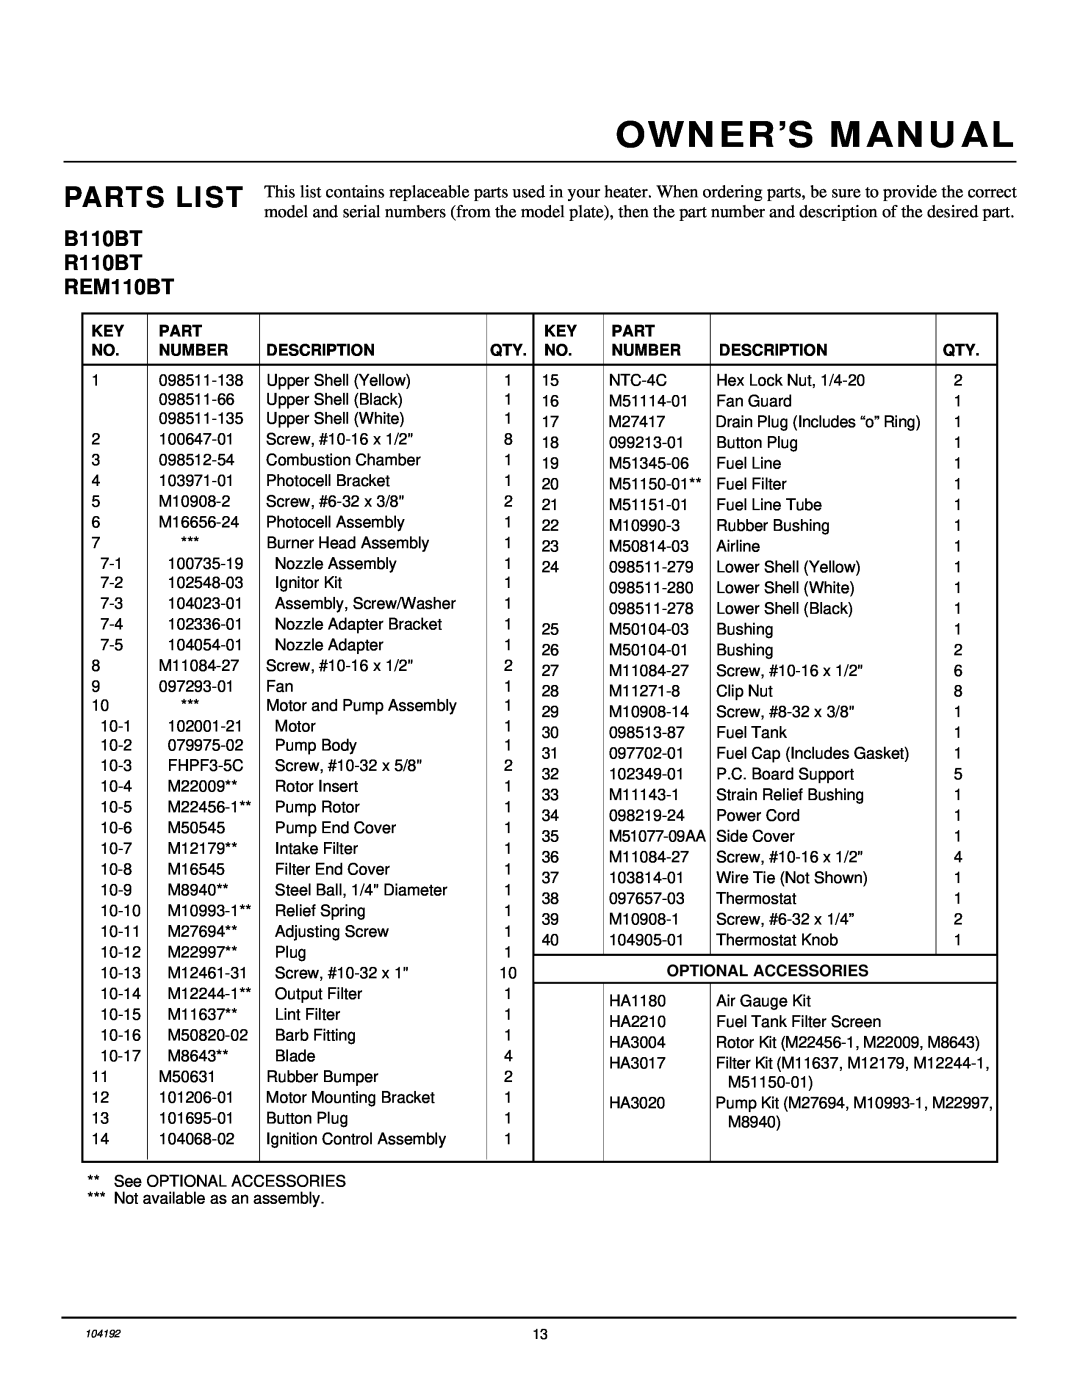 Desa owner manual Parts List, B110BT R110BT REM110BT, Number, Description, Optional Accessories 